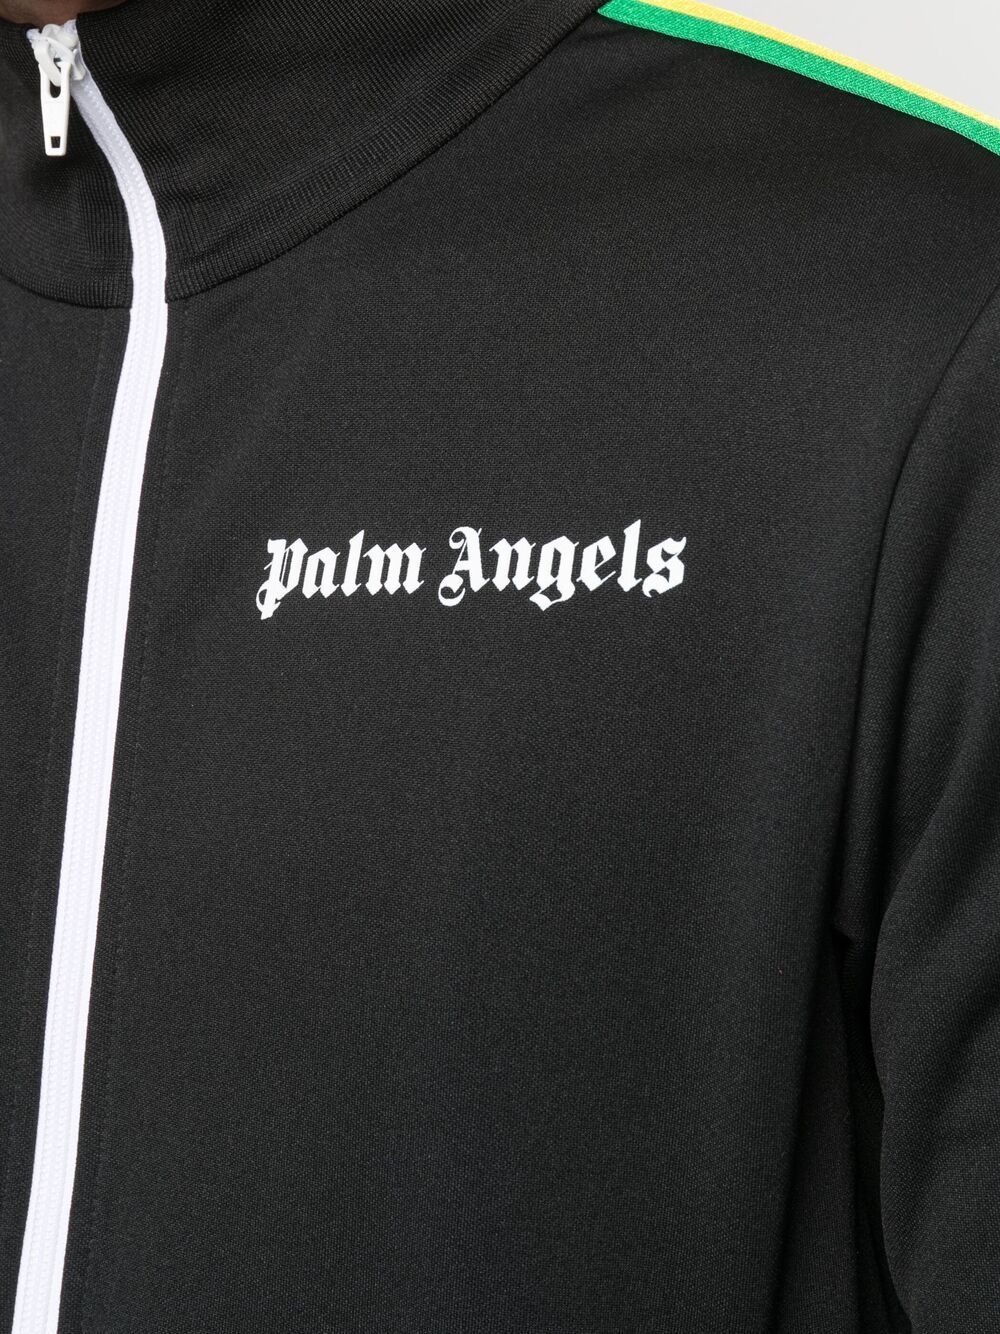 PALM ANGELS Exodus Track Jacket Black - MAISONDEFASHION.COM